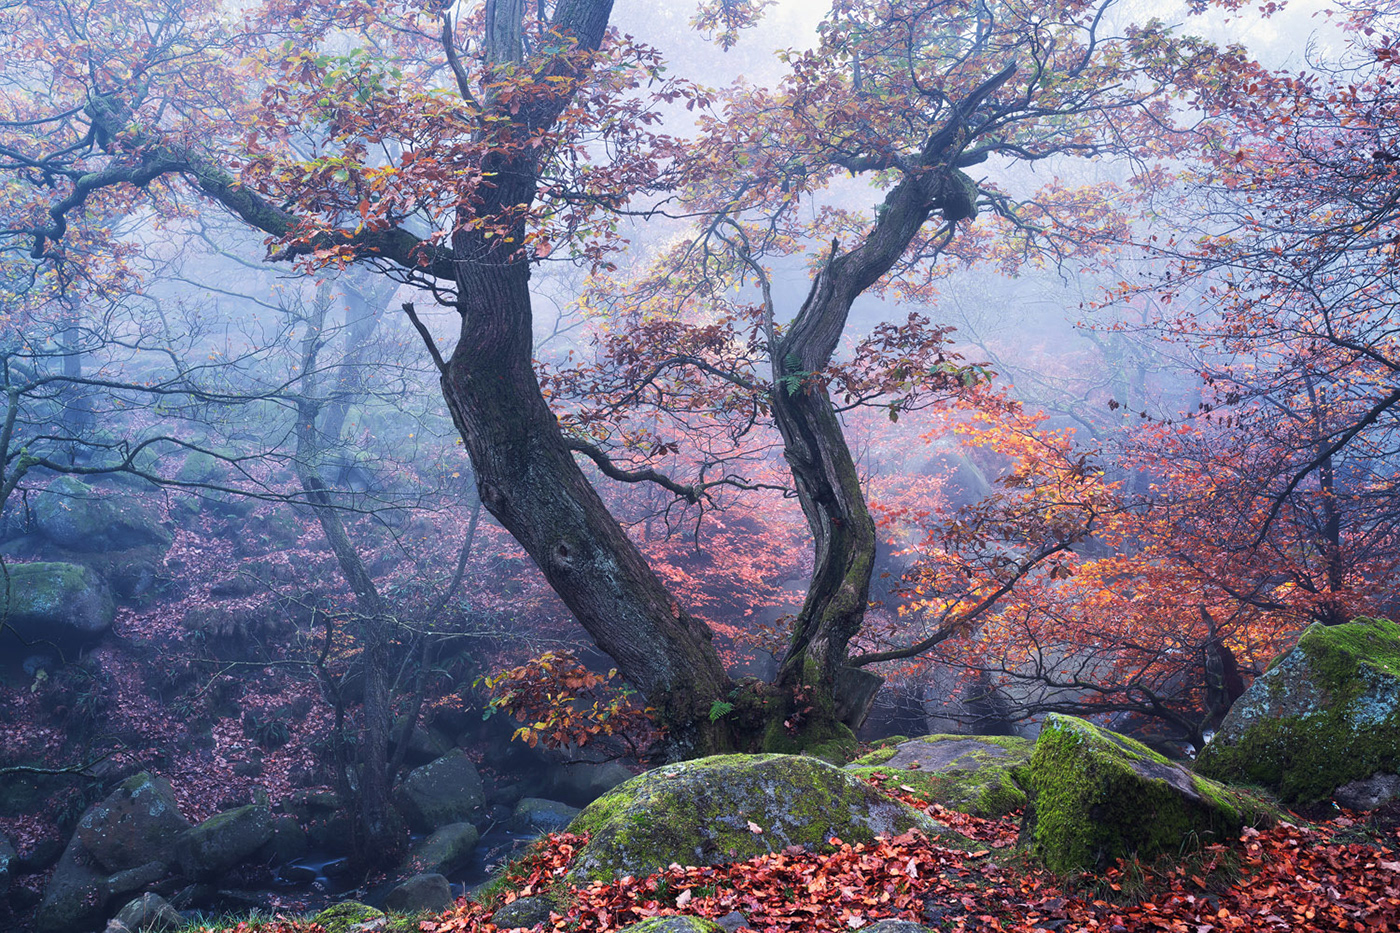 autumn Gorge mist Treescape enchanted fairytale DAWN forest Landscape Nature